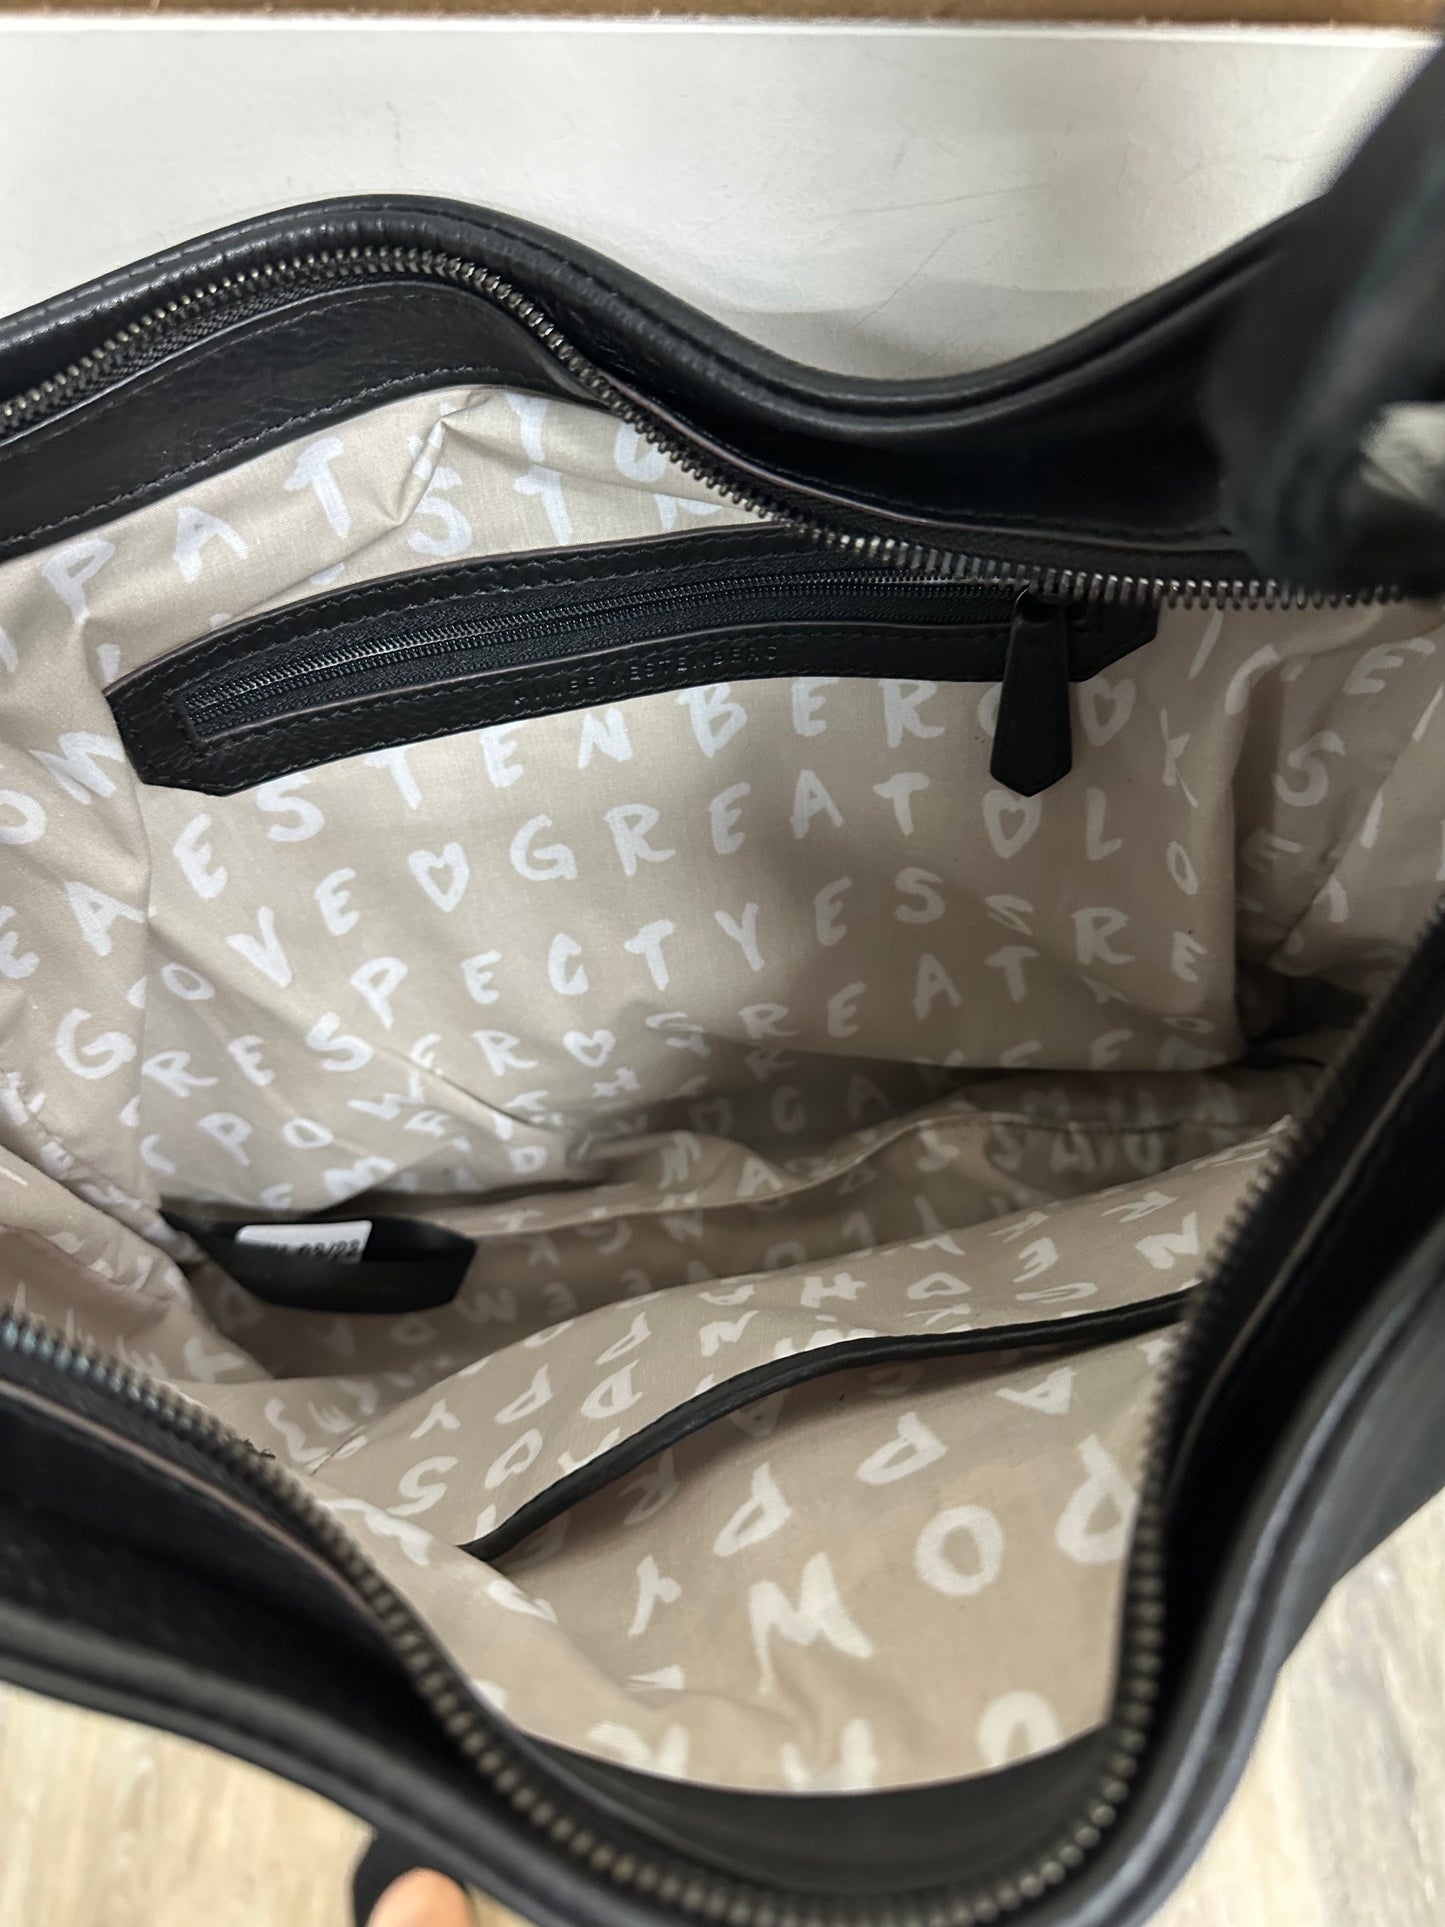 Handbag Designer By Aimee Kestenberg  Size: Medium